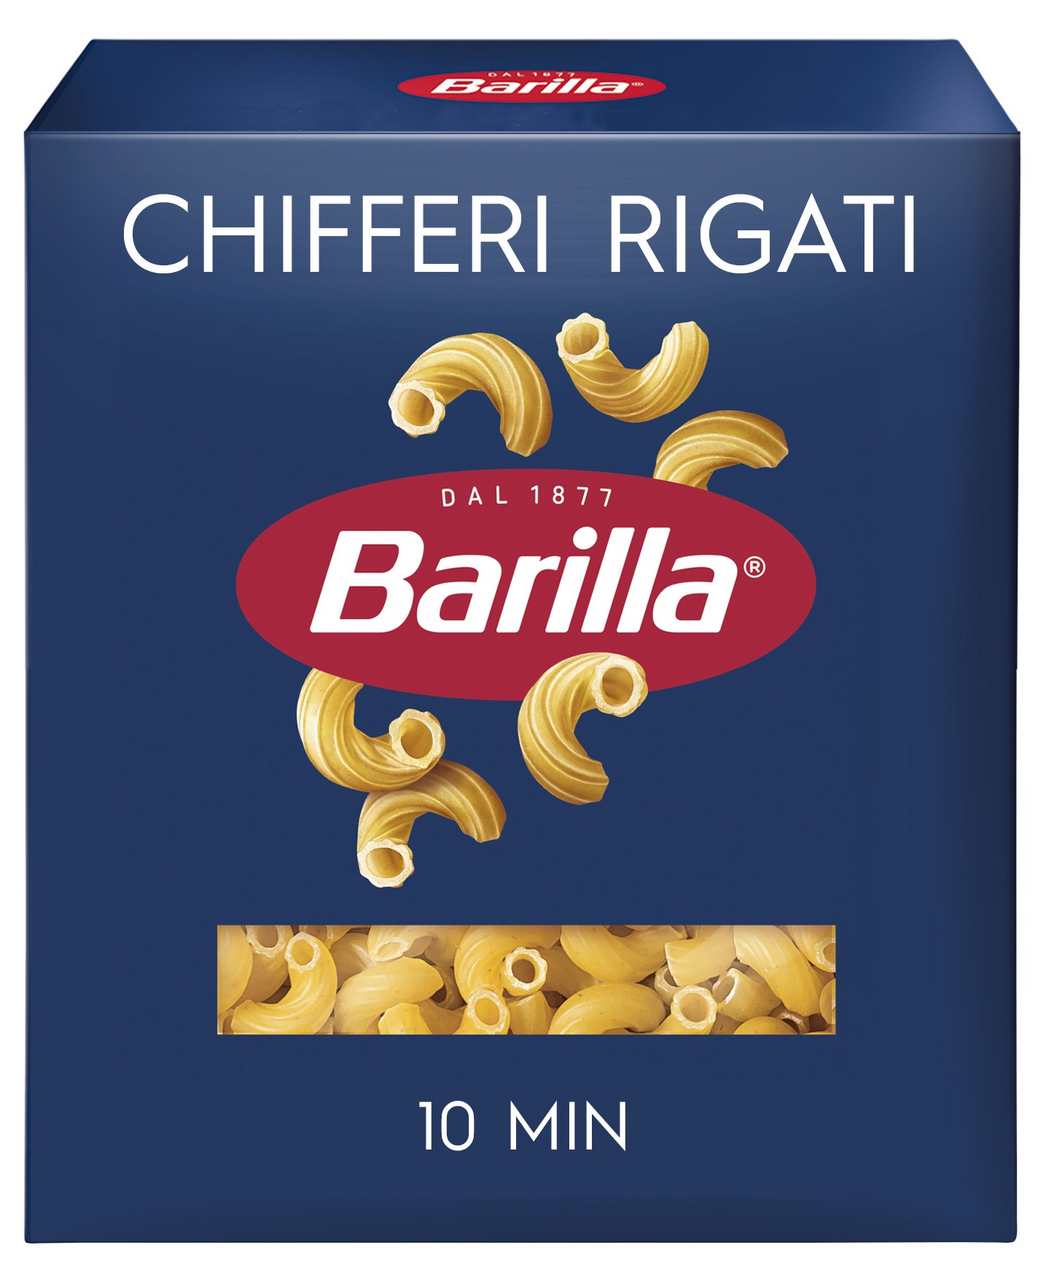 Макароны BARILLA Chifferi rigati n.41, группа А высший сорт, 450г